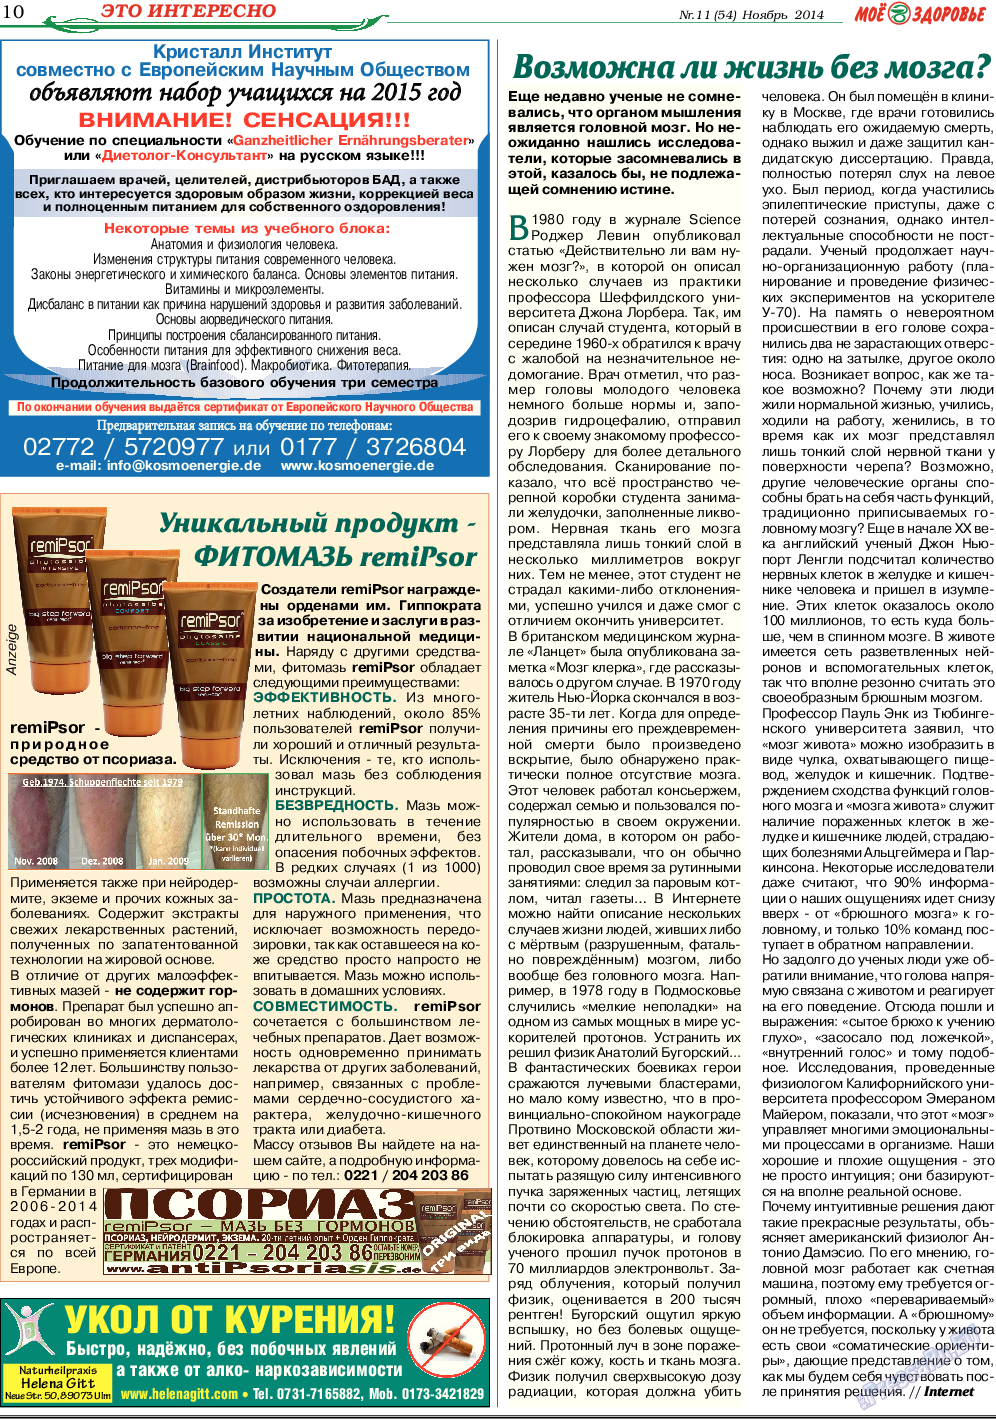 Кругозор, газета. 2014 №11 стр.10